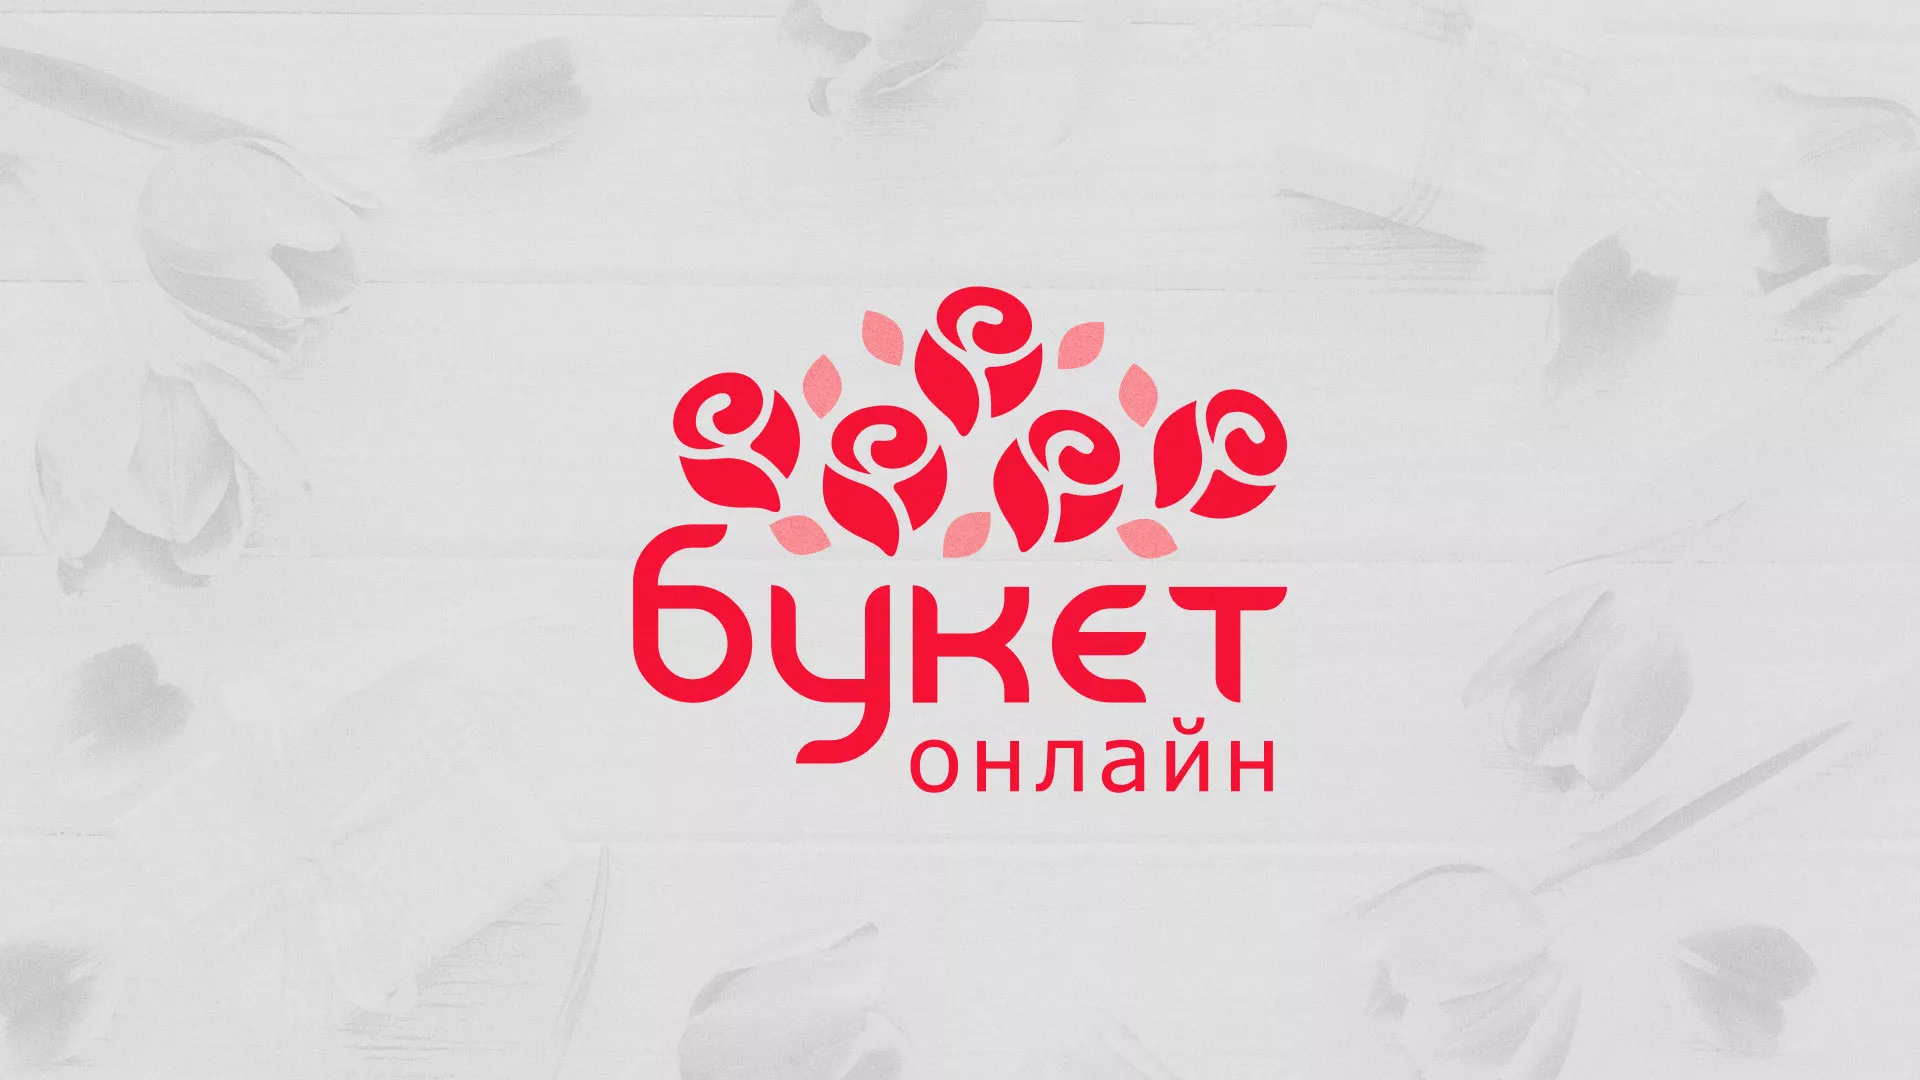 Создание интернет-магазина «Букет-онлайн» по цветам в Черногорске